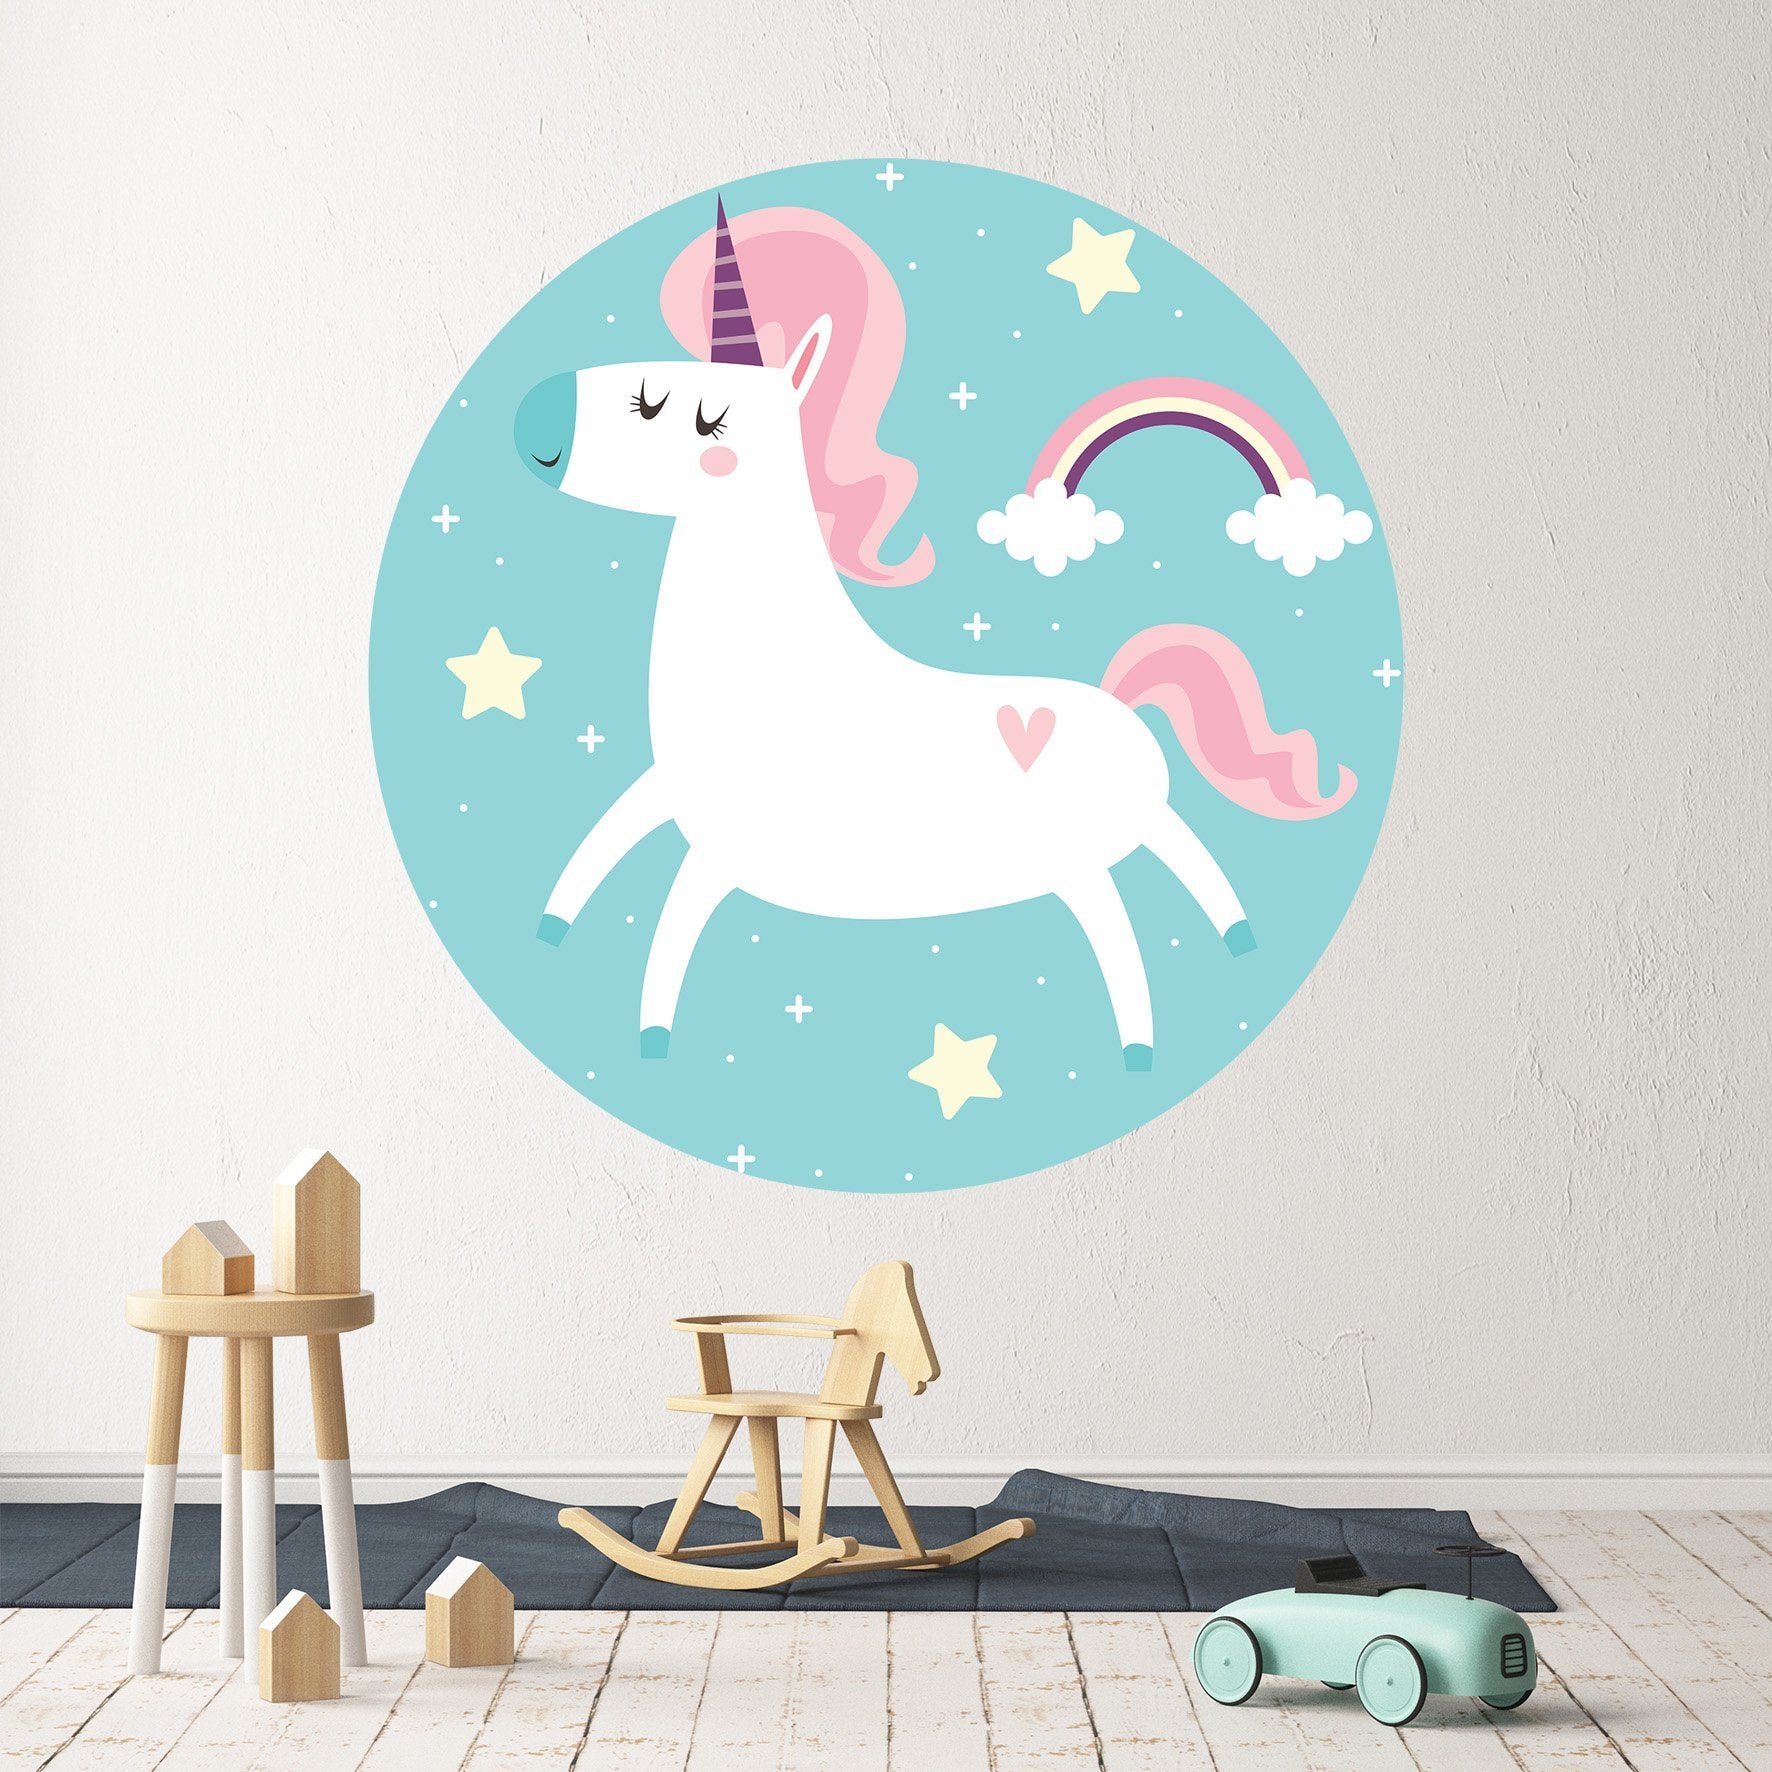 3D Cute Unicorn Rainbow 146 Wall Stickers Wallpaper AJ Wallpaper 